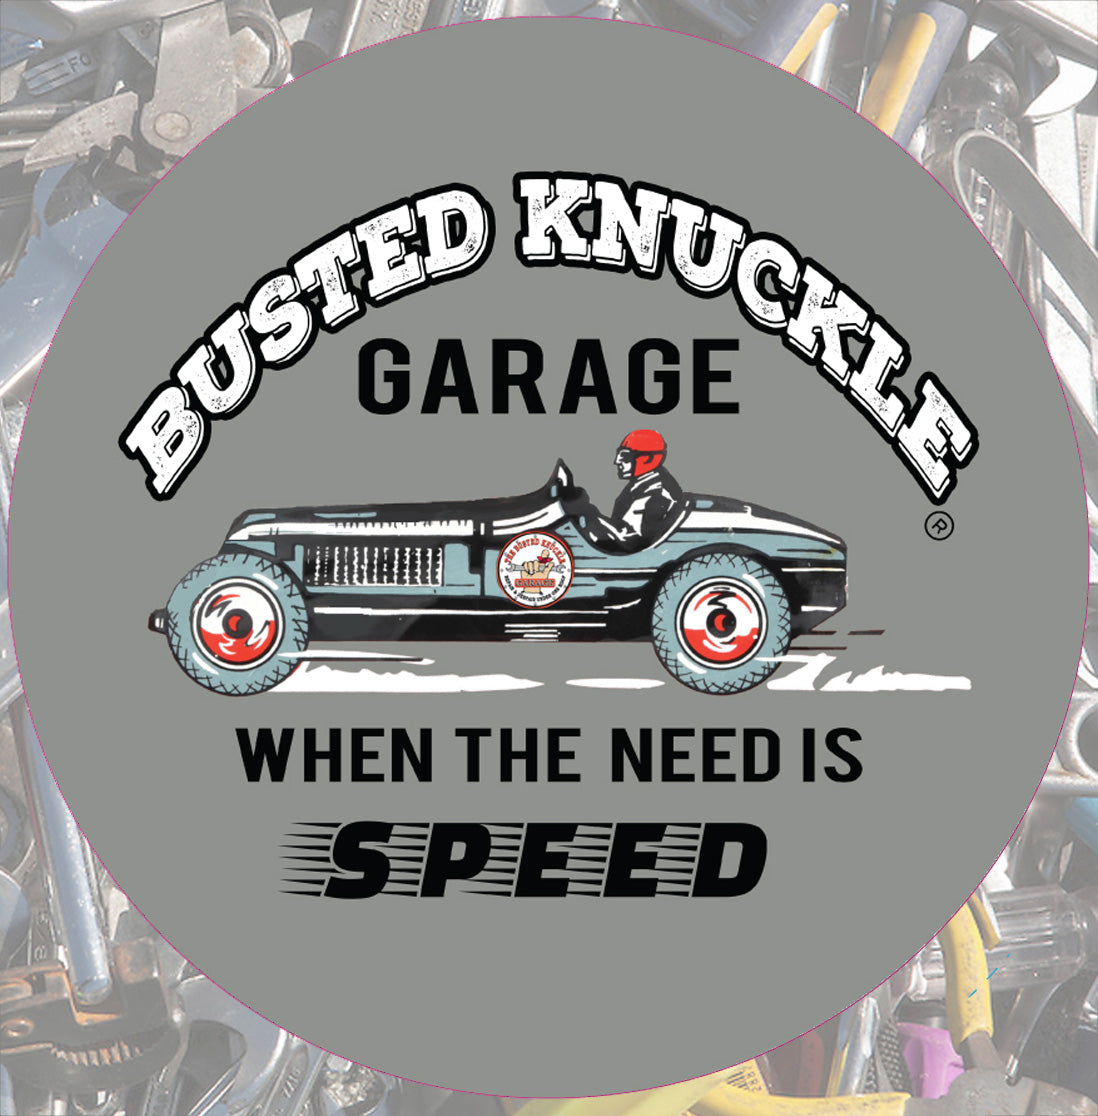 Busted Knuckle Garage Carguy Vintage Race Car Barstool-Version 1